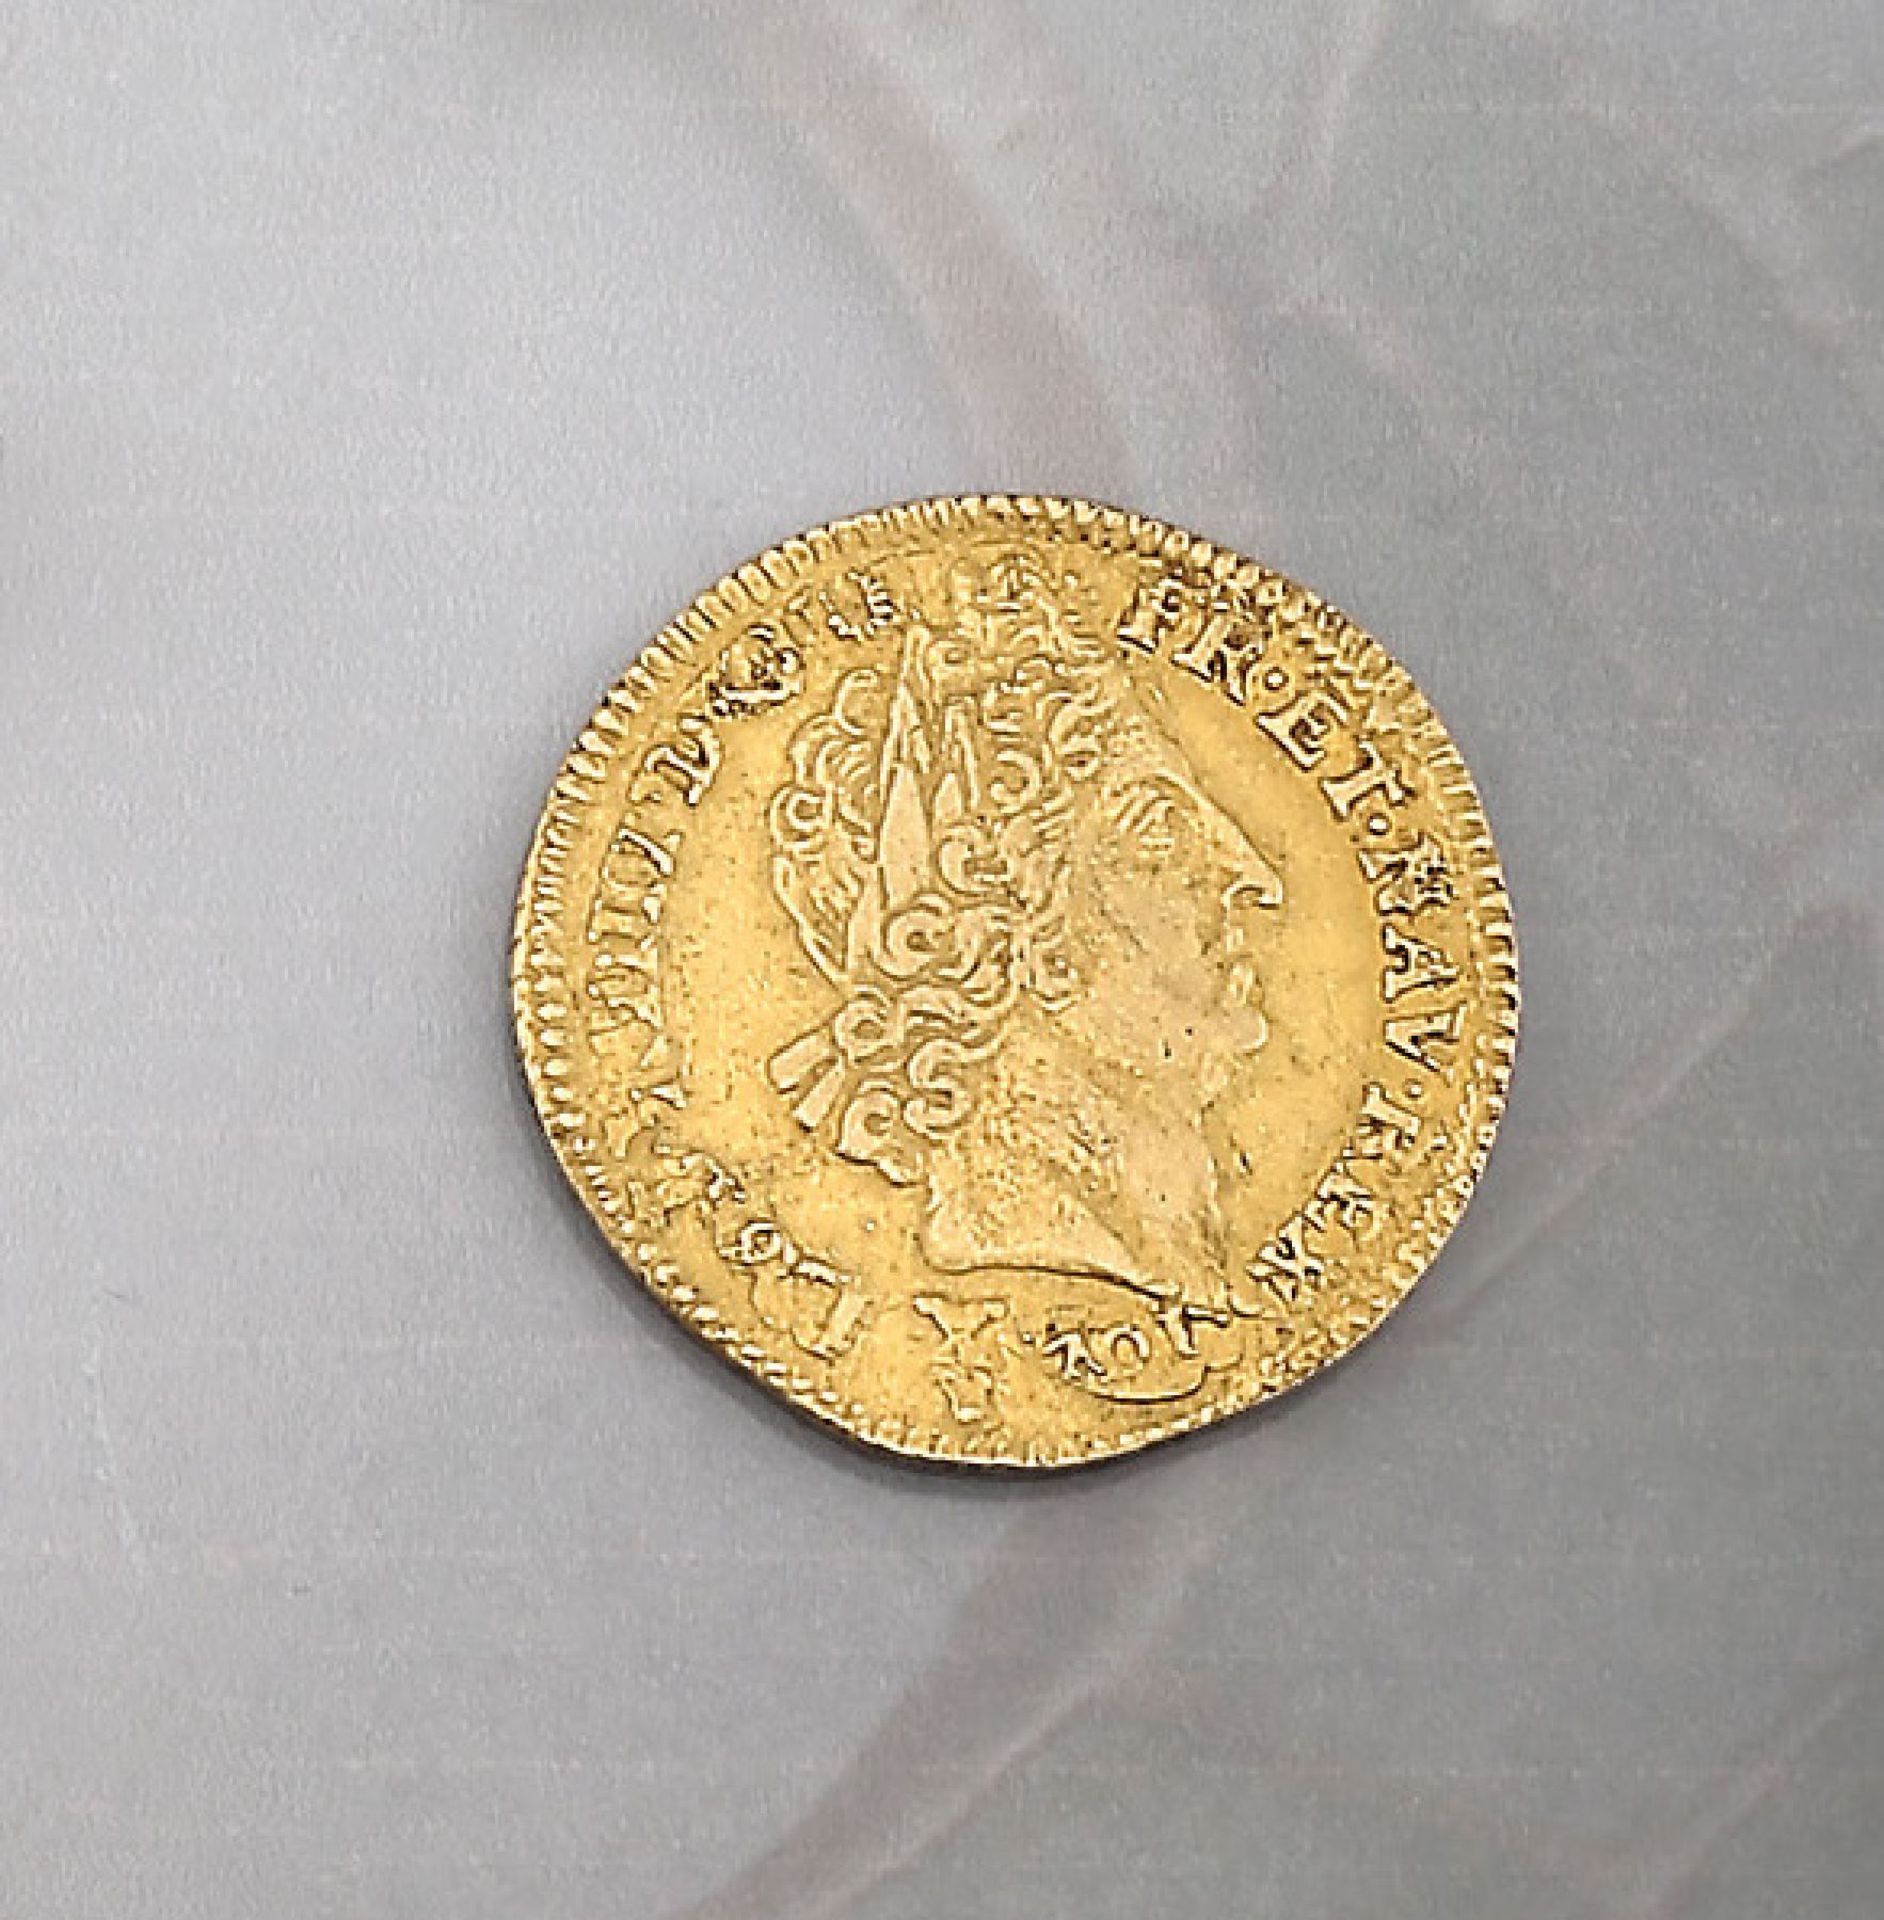 Goldmünze, Louis d'or, Frankreich, 1701Gold coin, Louis d'or, France, 1701